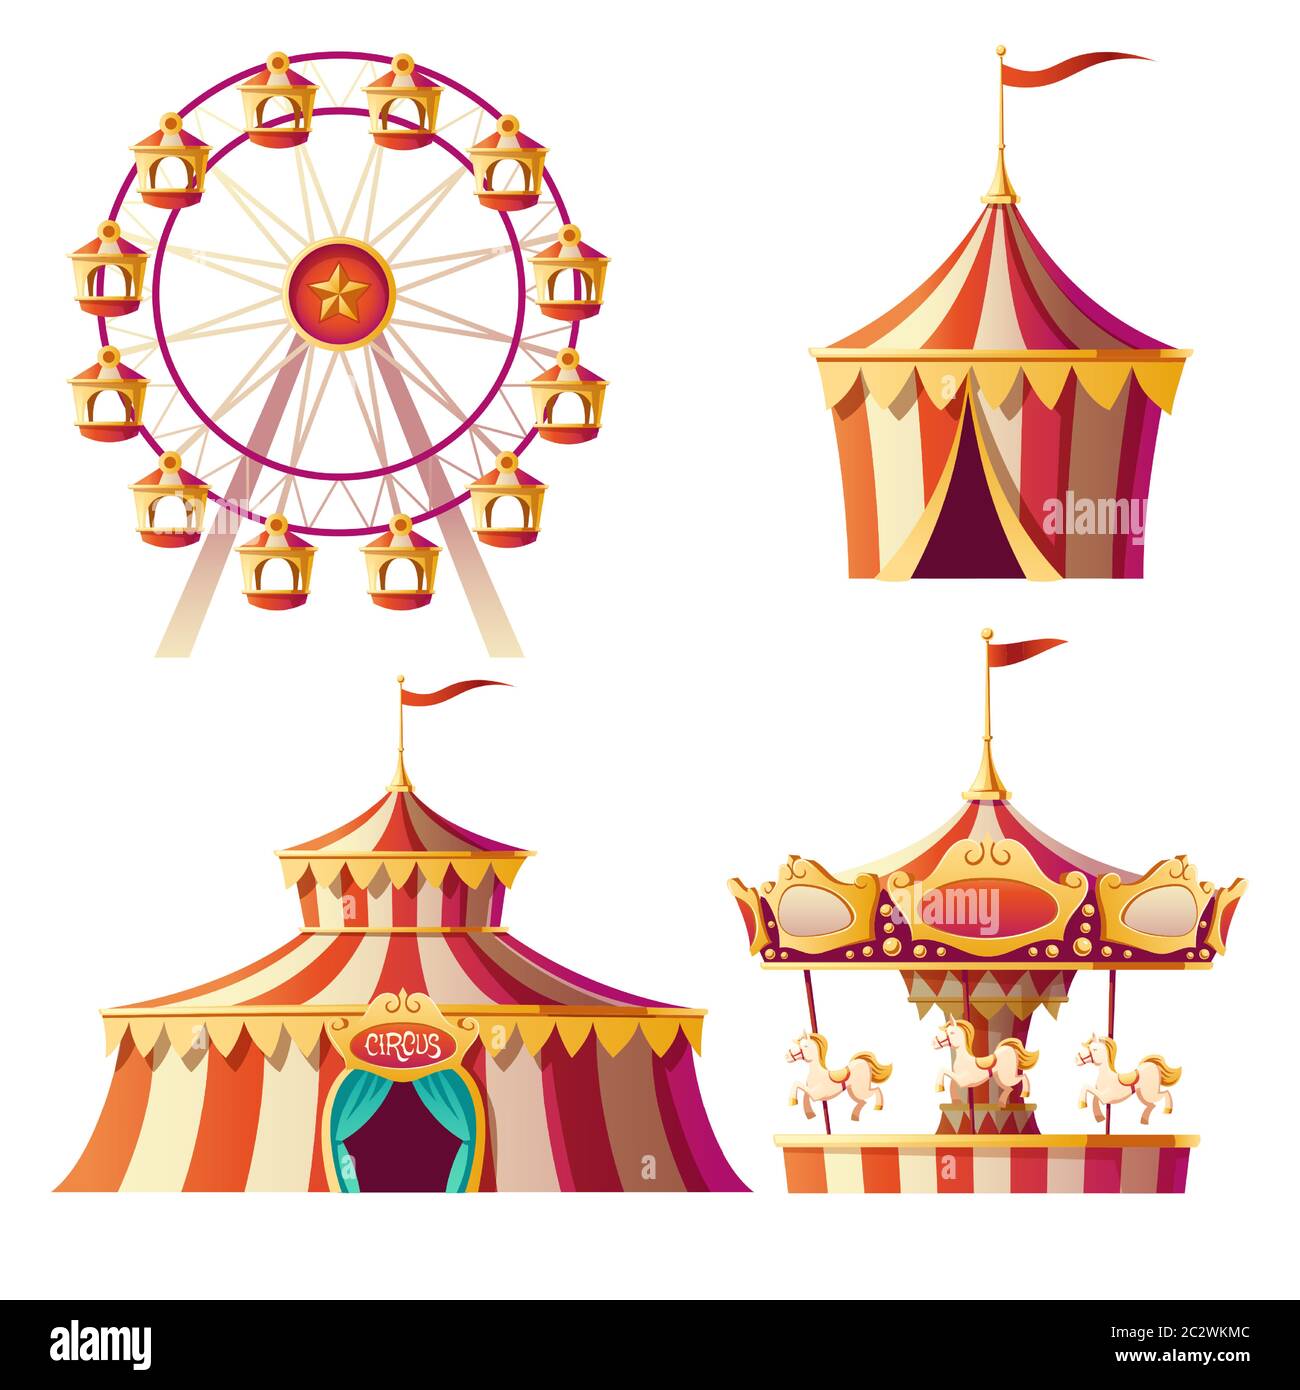 Parco di divertimenti, carnevale o fiera cartoon illustrazione vettoriale. Allegro-go-round, tenda circo e ruota di ferris, elementi per bambini divertimento estivo i Illustrazione Vettoriale